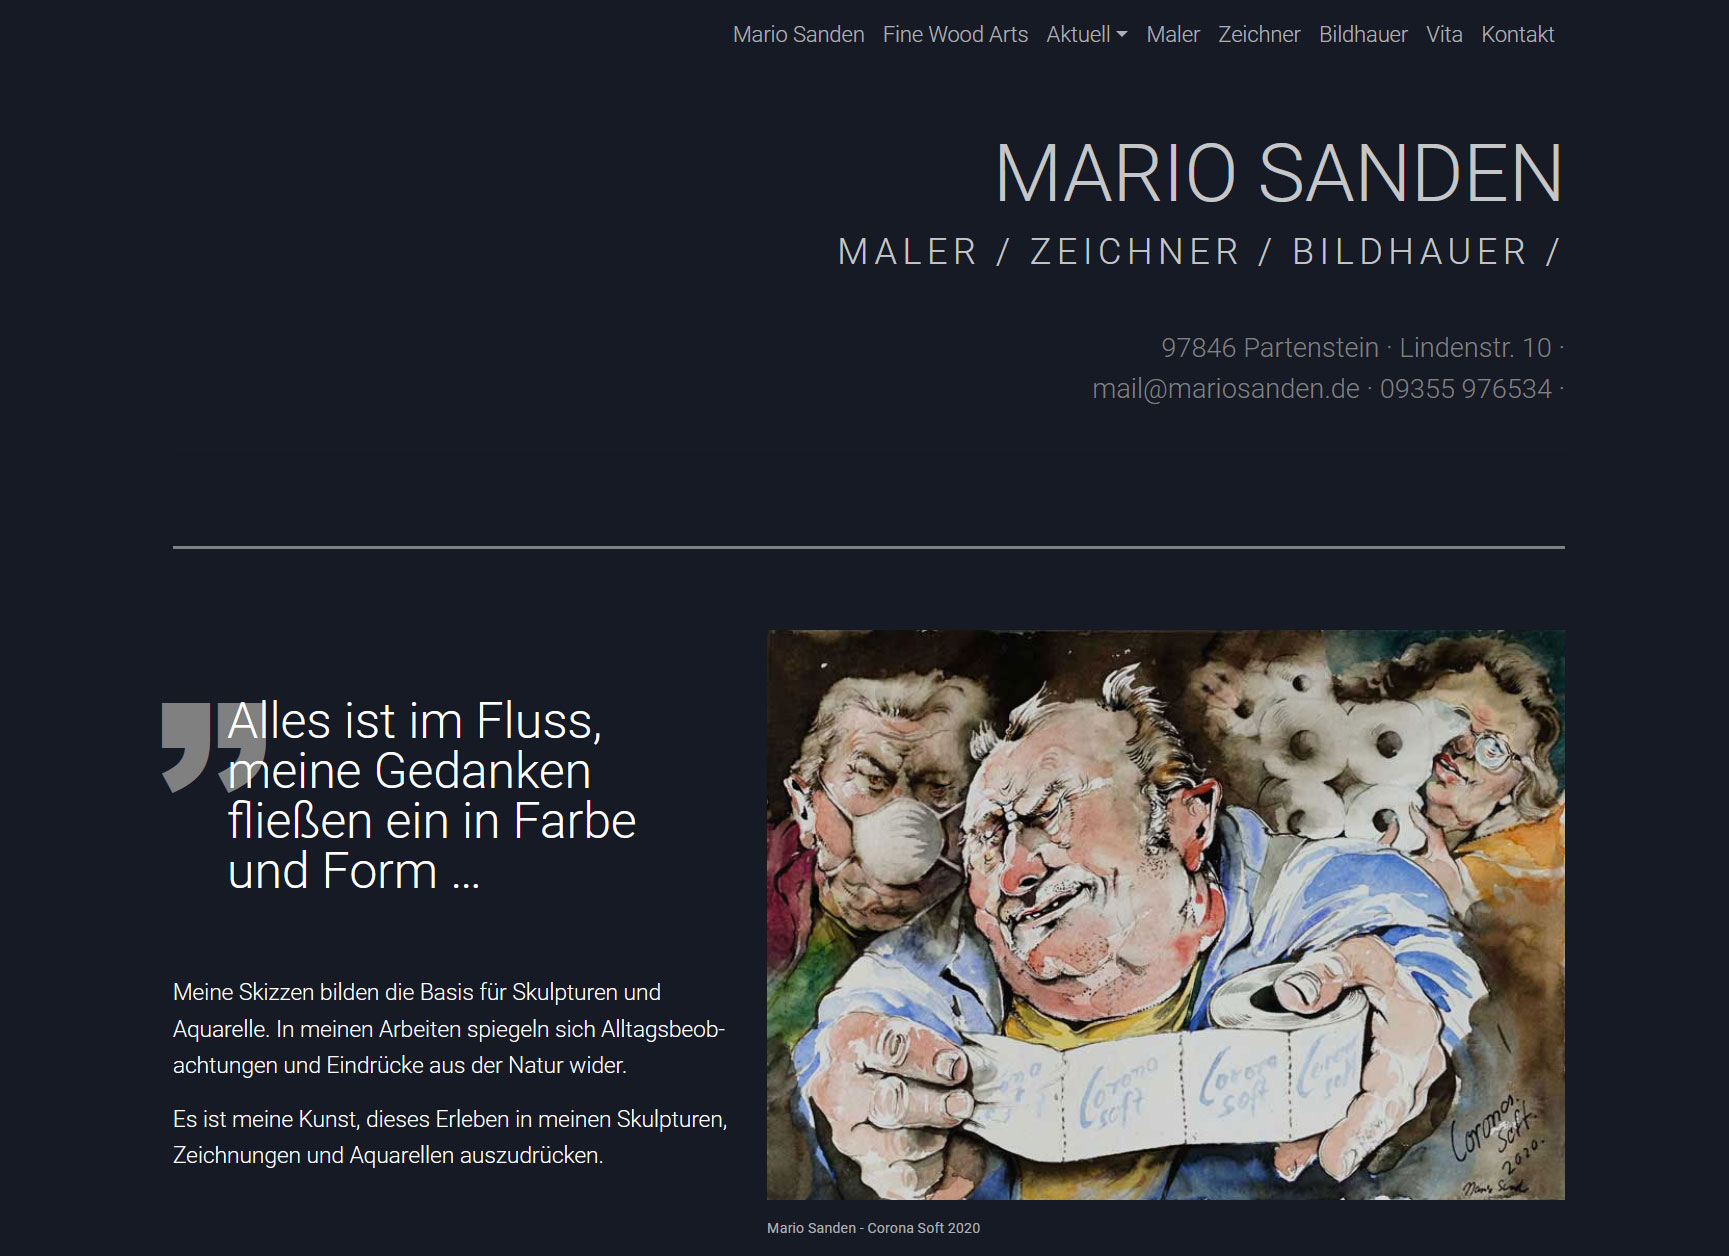 Mario Sanden - Maler / Zeichner / Bildhauer